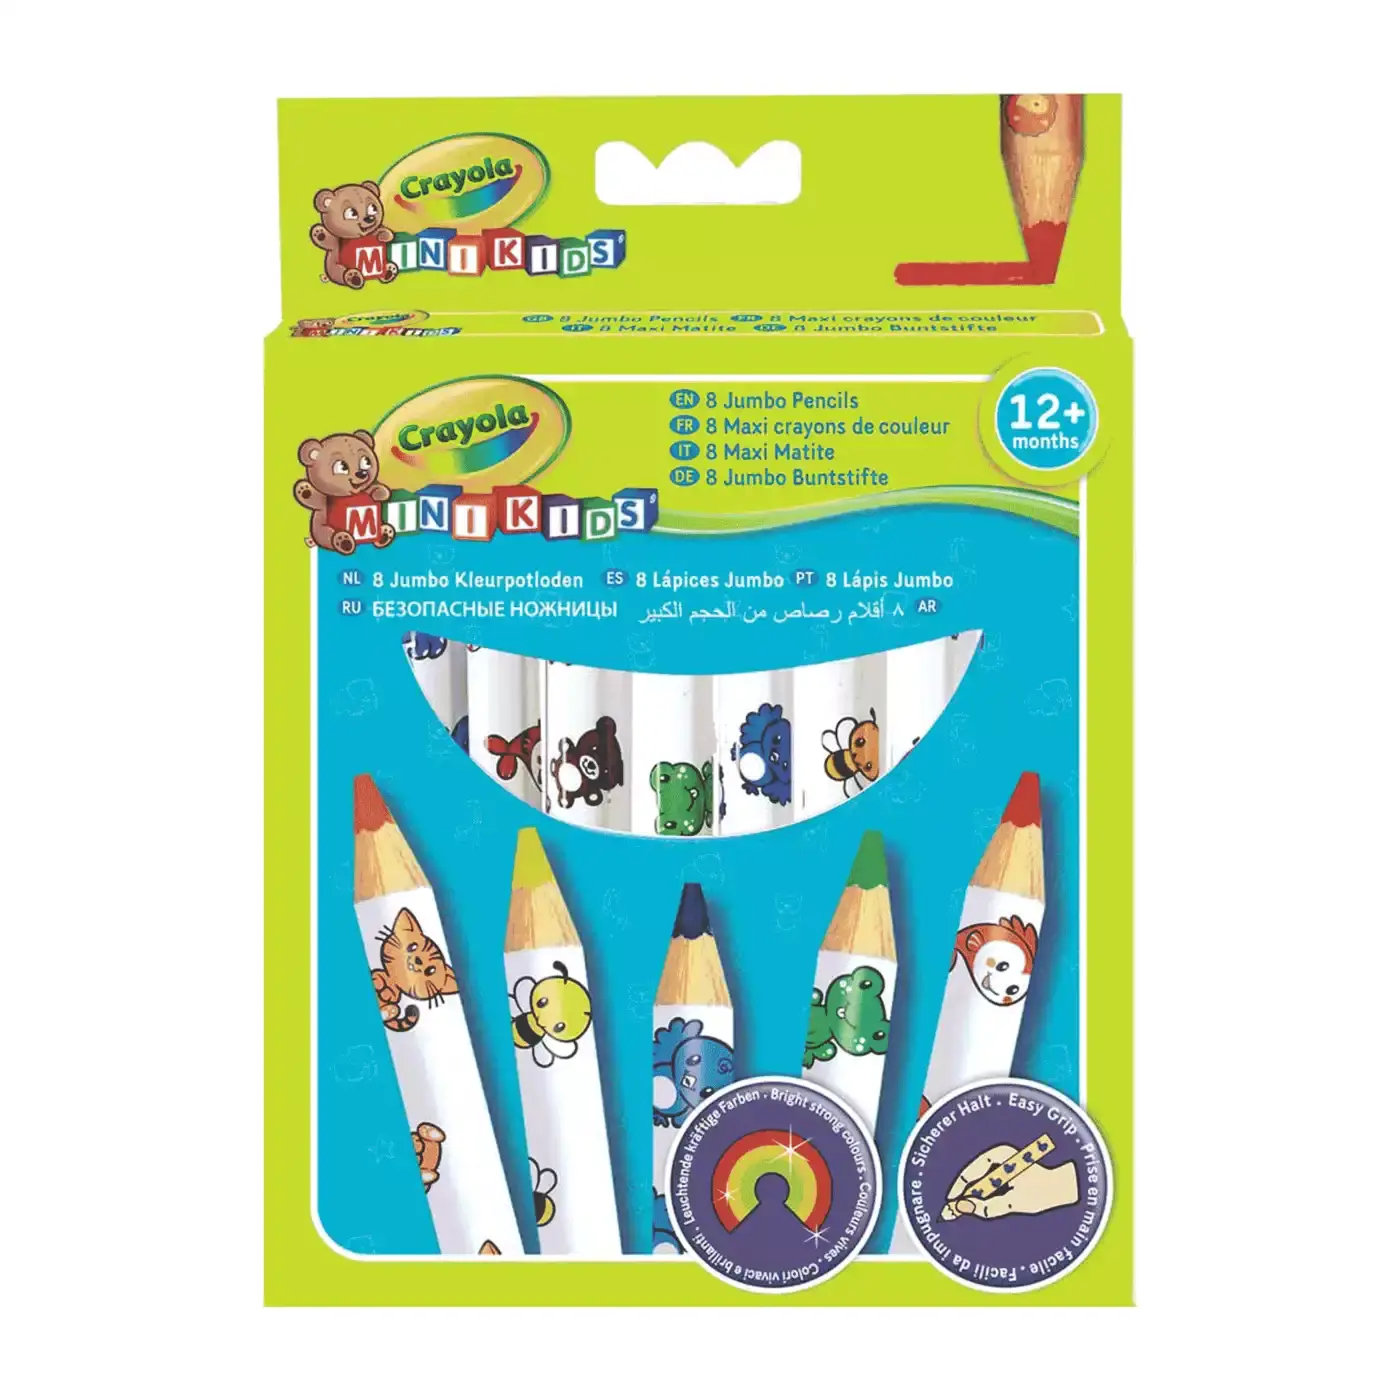 Mini Kids Buntstifte Crayola Weiß 2000525238504 3